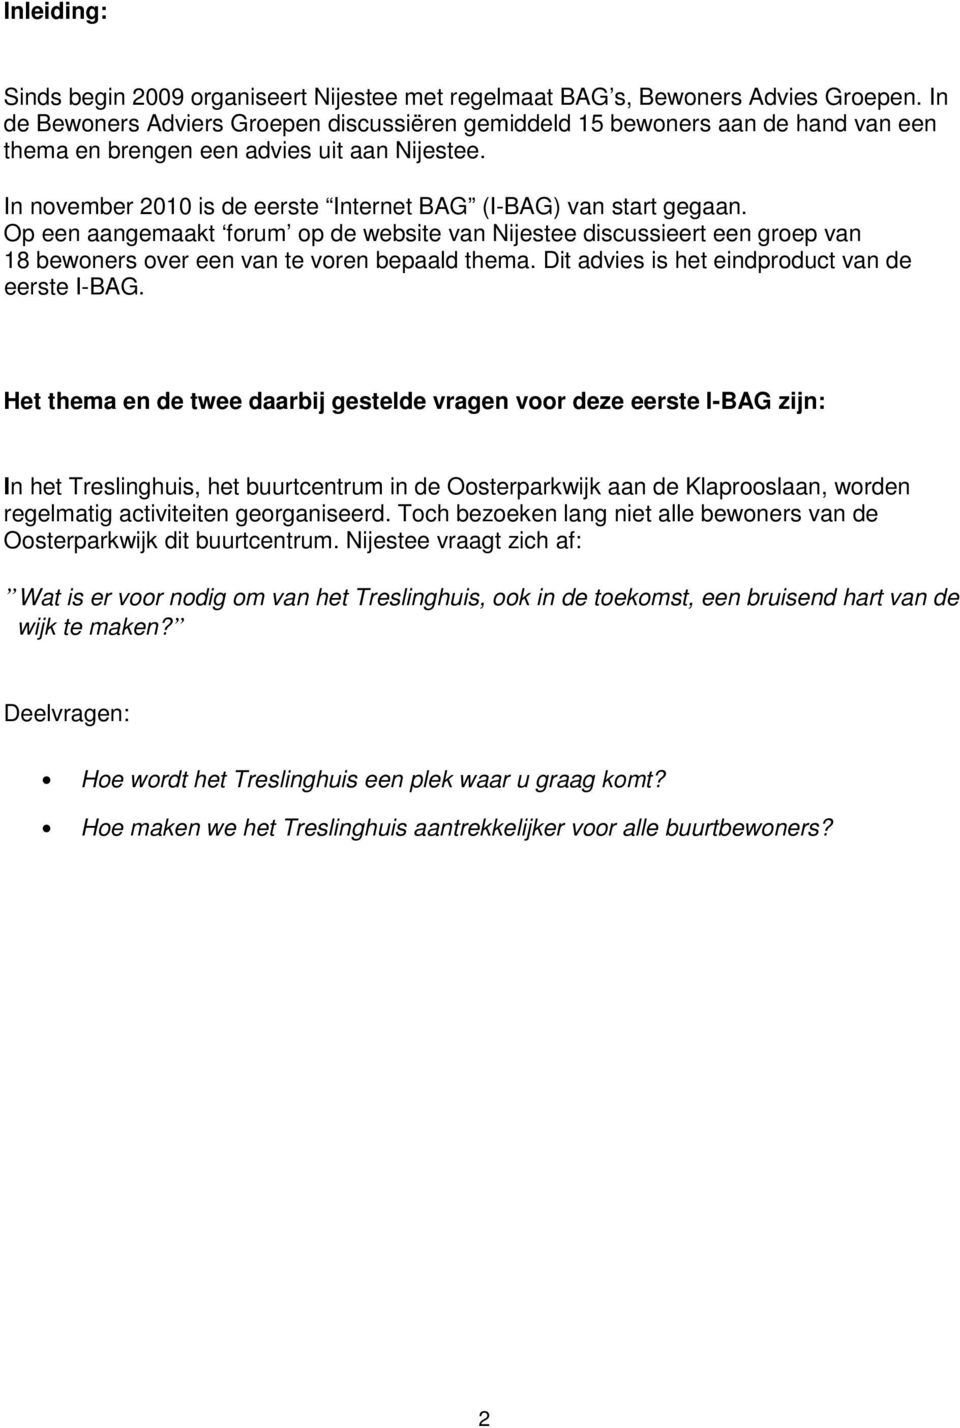 Op een aangemaakt forum op de website van Nijestee discussieert een groep van 18 bewoners over een van te voren bepaald thema. Dit advies is het eindproduct van de eerste I-BAG.